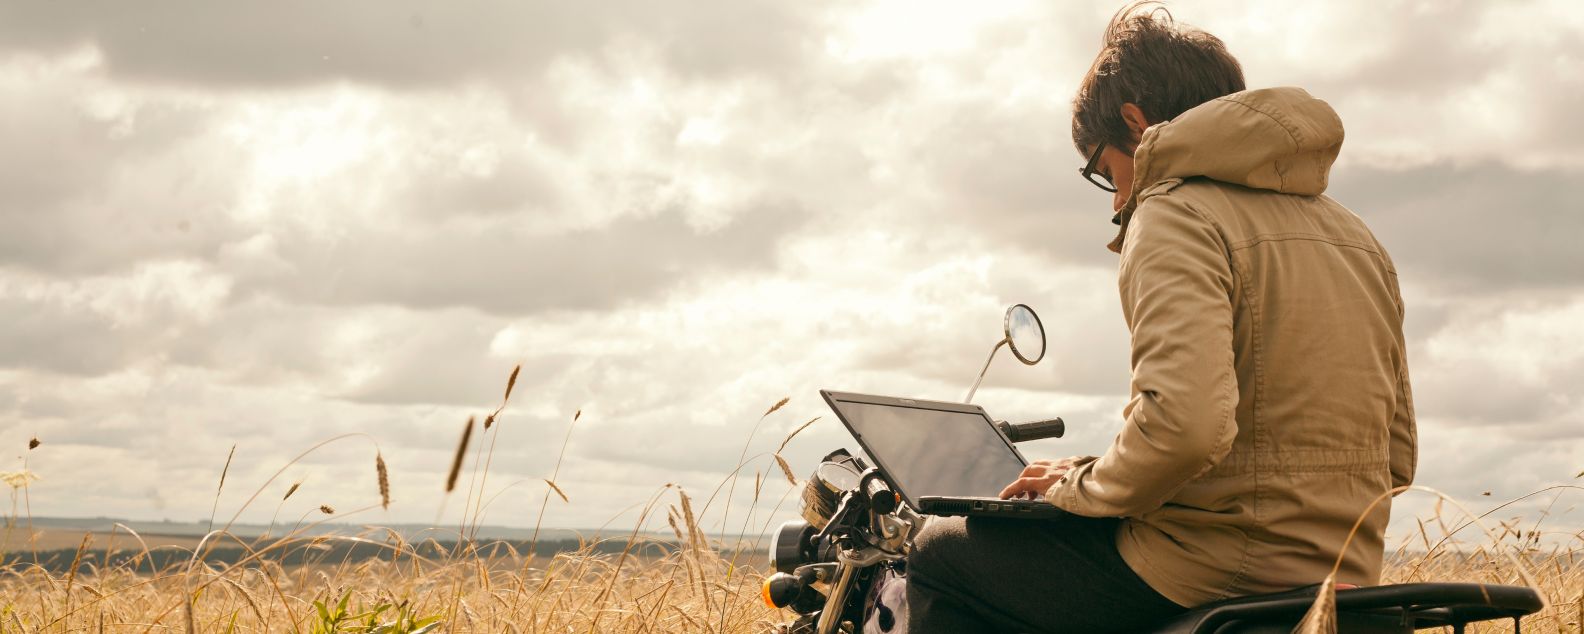 ノートPCで作業しながらオートバイに座っている人